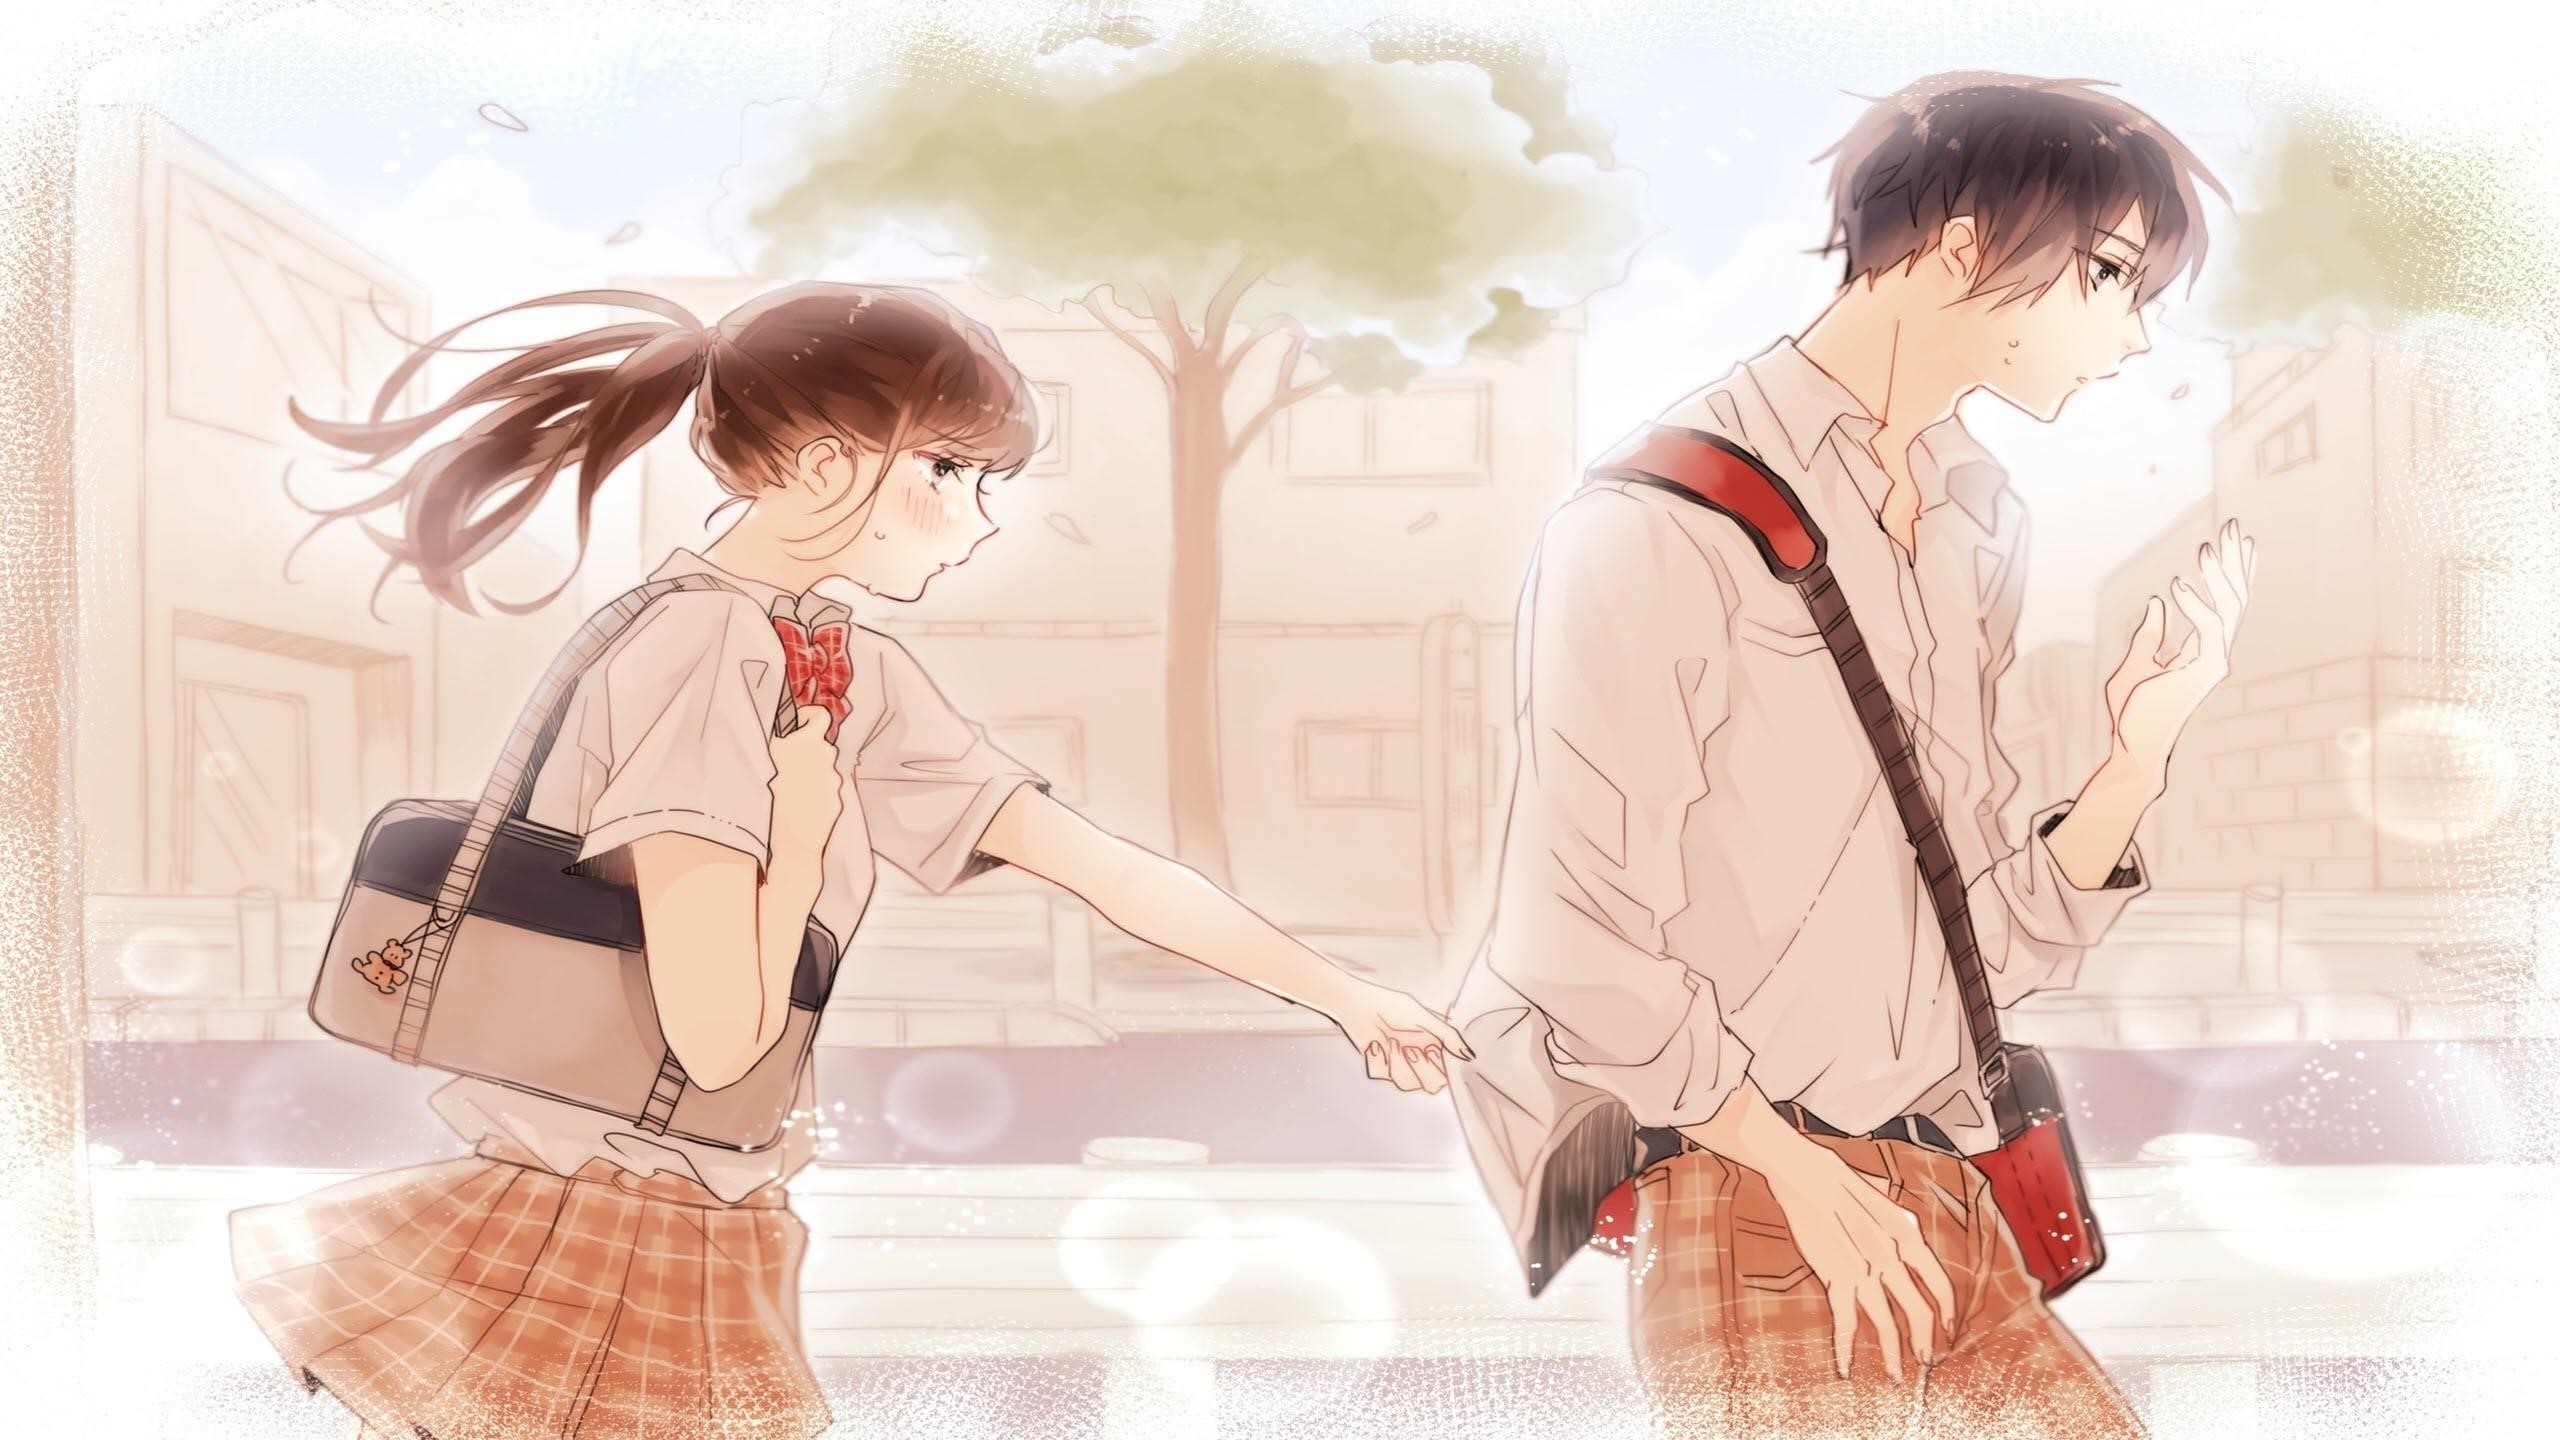 Hình ảnh của cặp đôi anime đáng yêu.